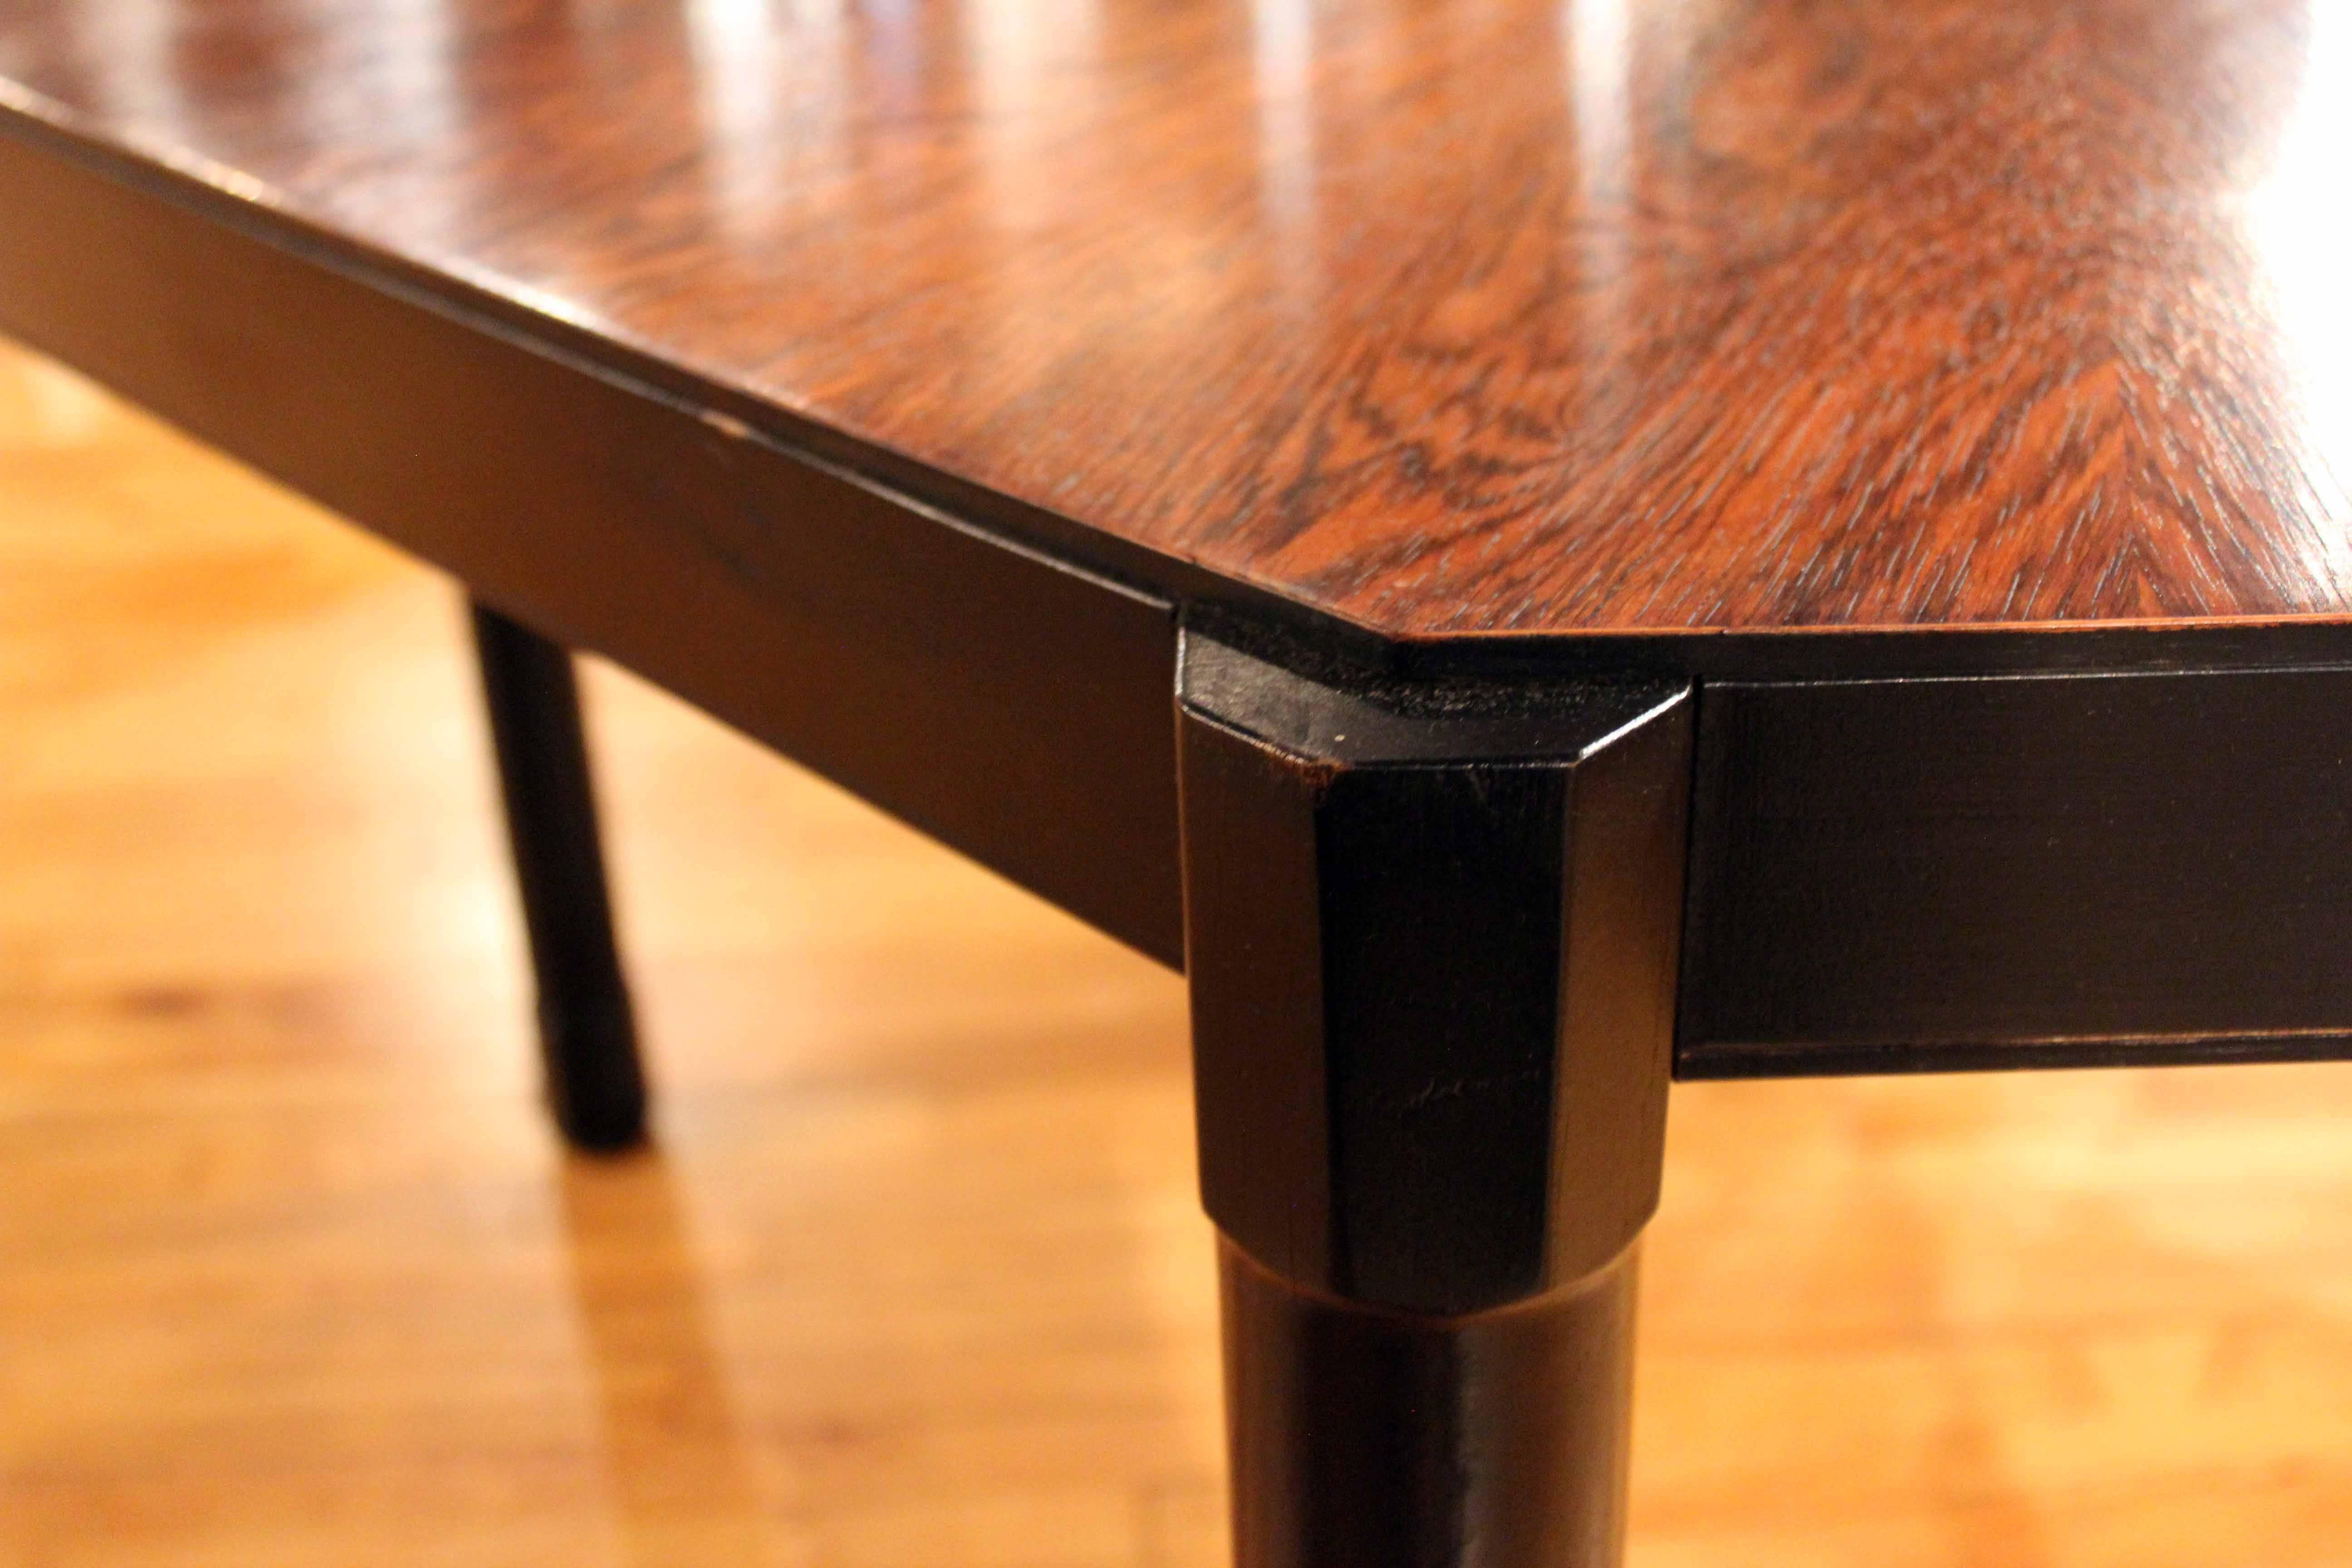 Italian Macassar wood center table with ebony edge and legs, octagonal shape.